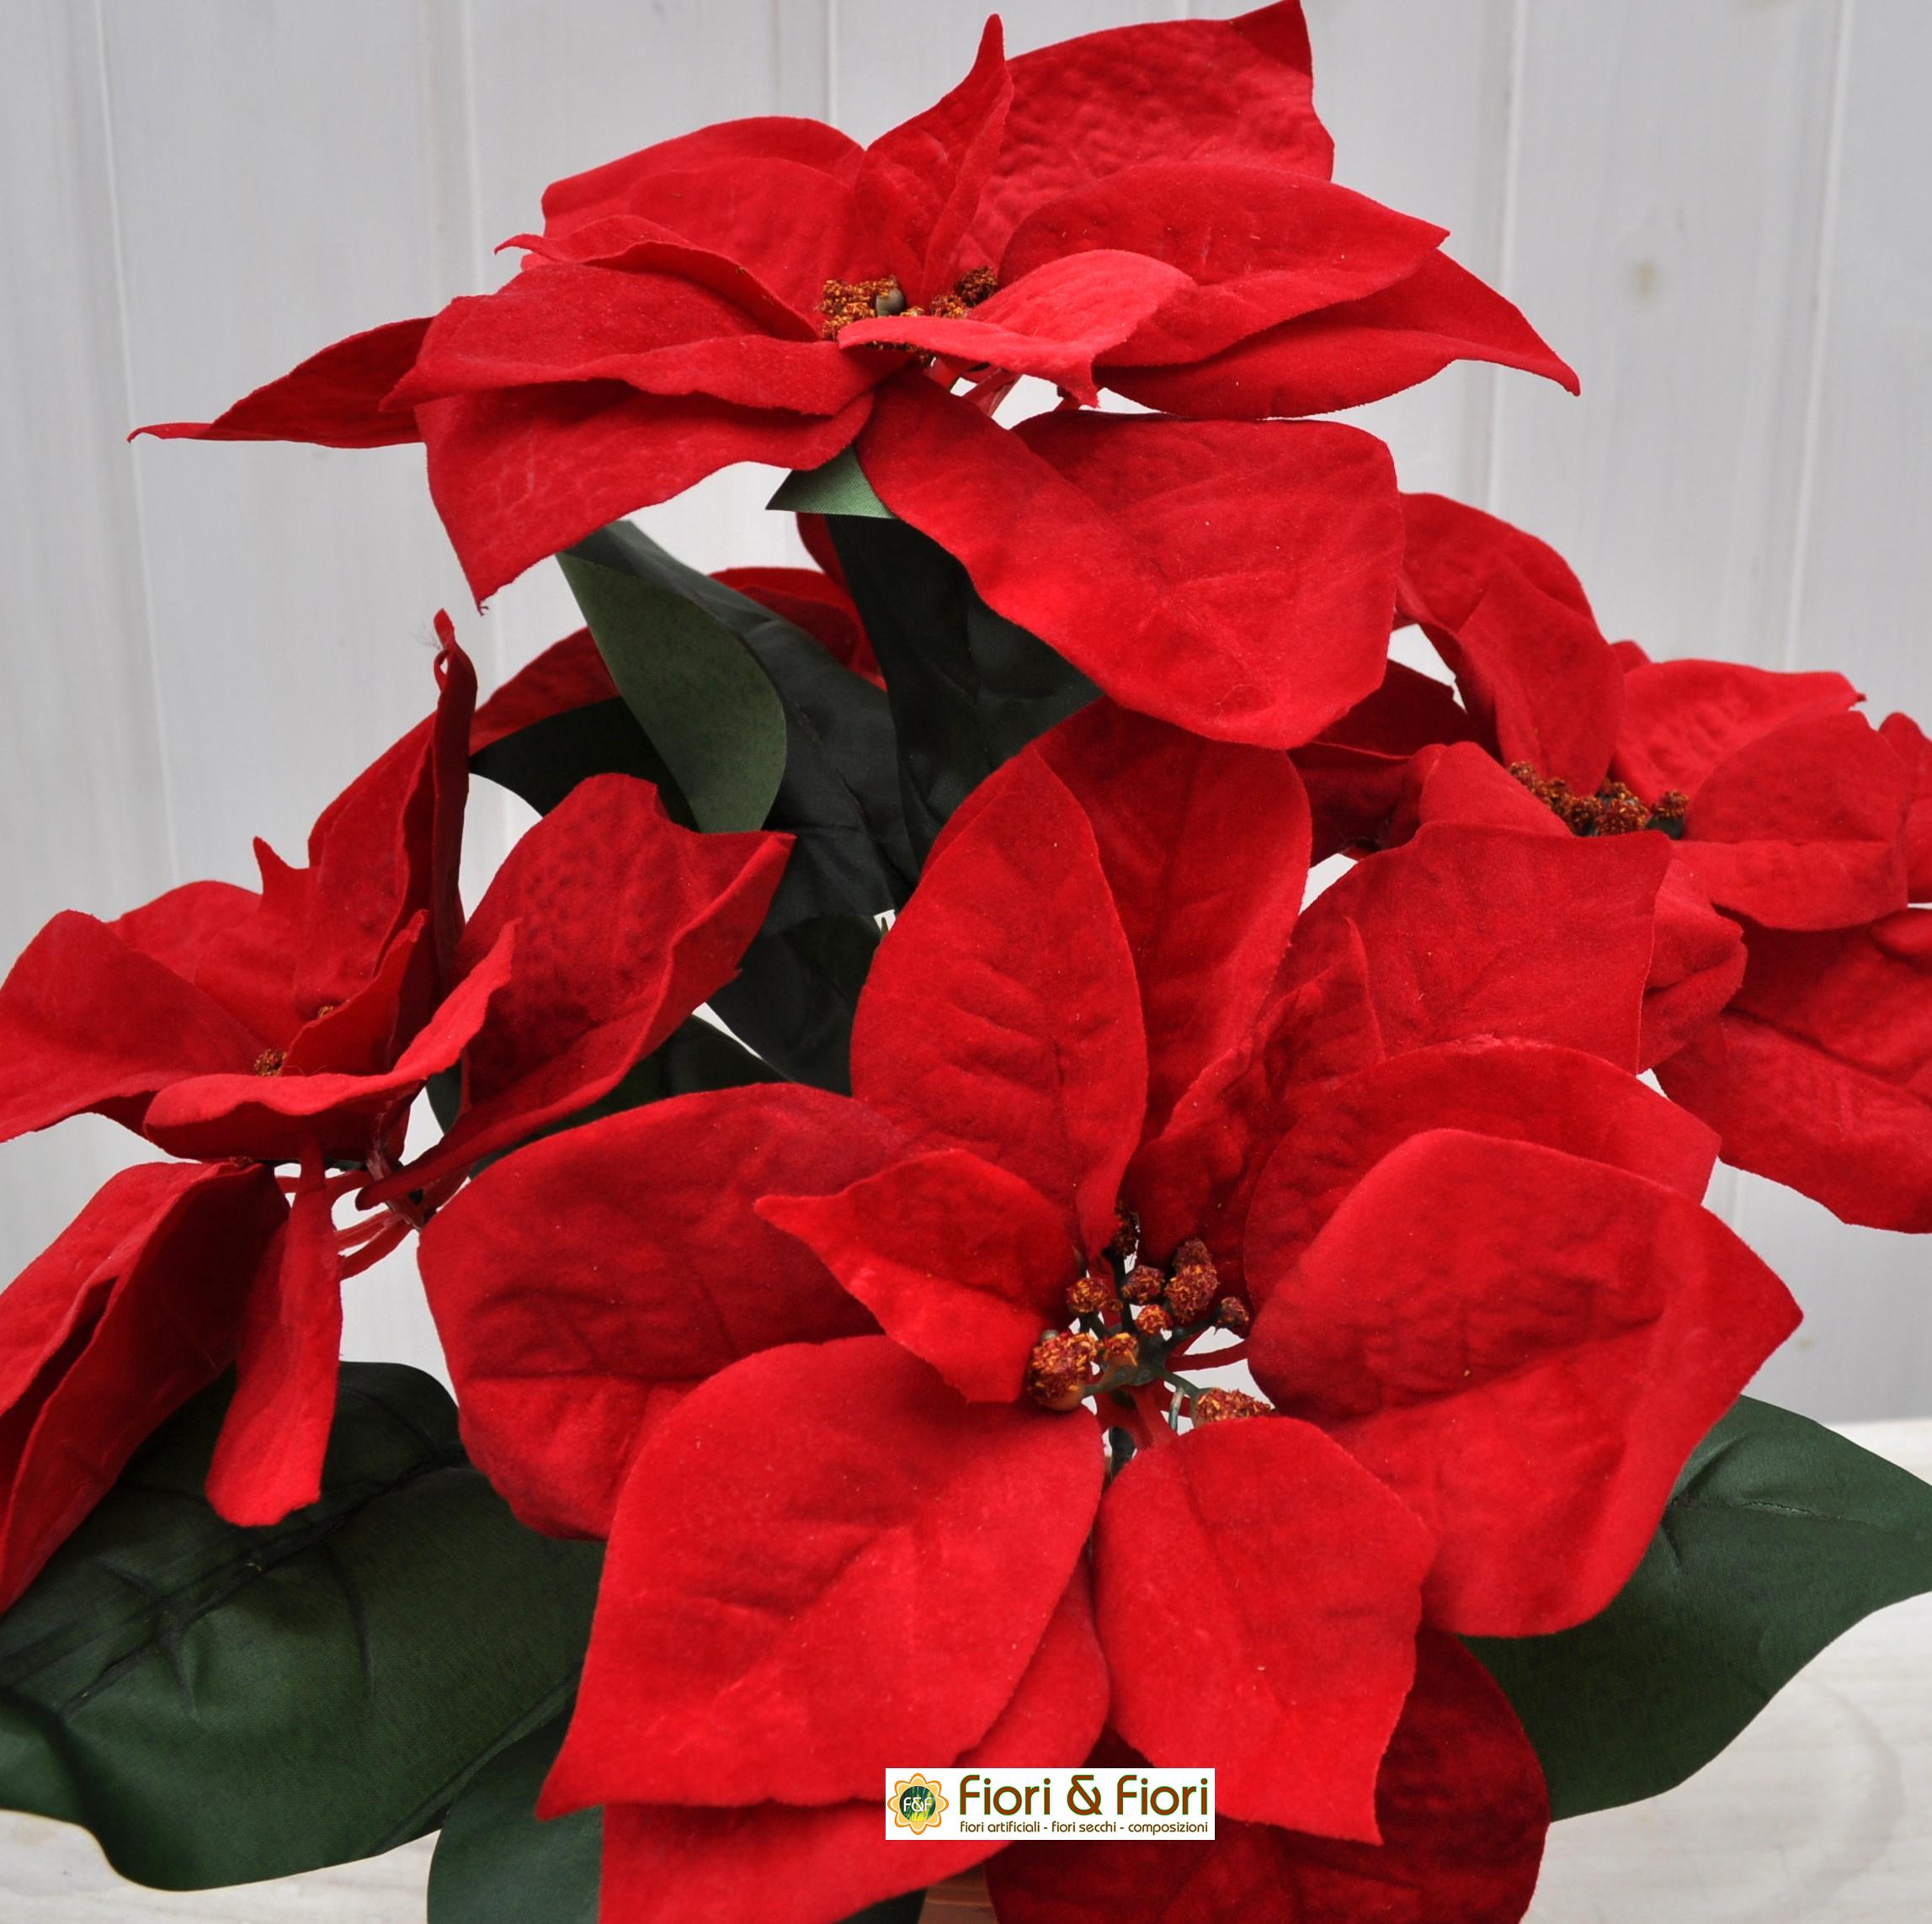 Fiore Stella Di Natale.Stella Di Natale Artificiale Rossa Grande In Vaso Con Fiori In Tessuto